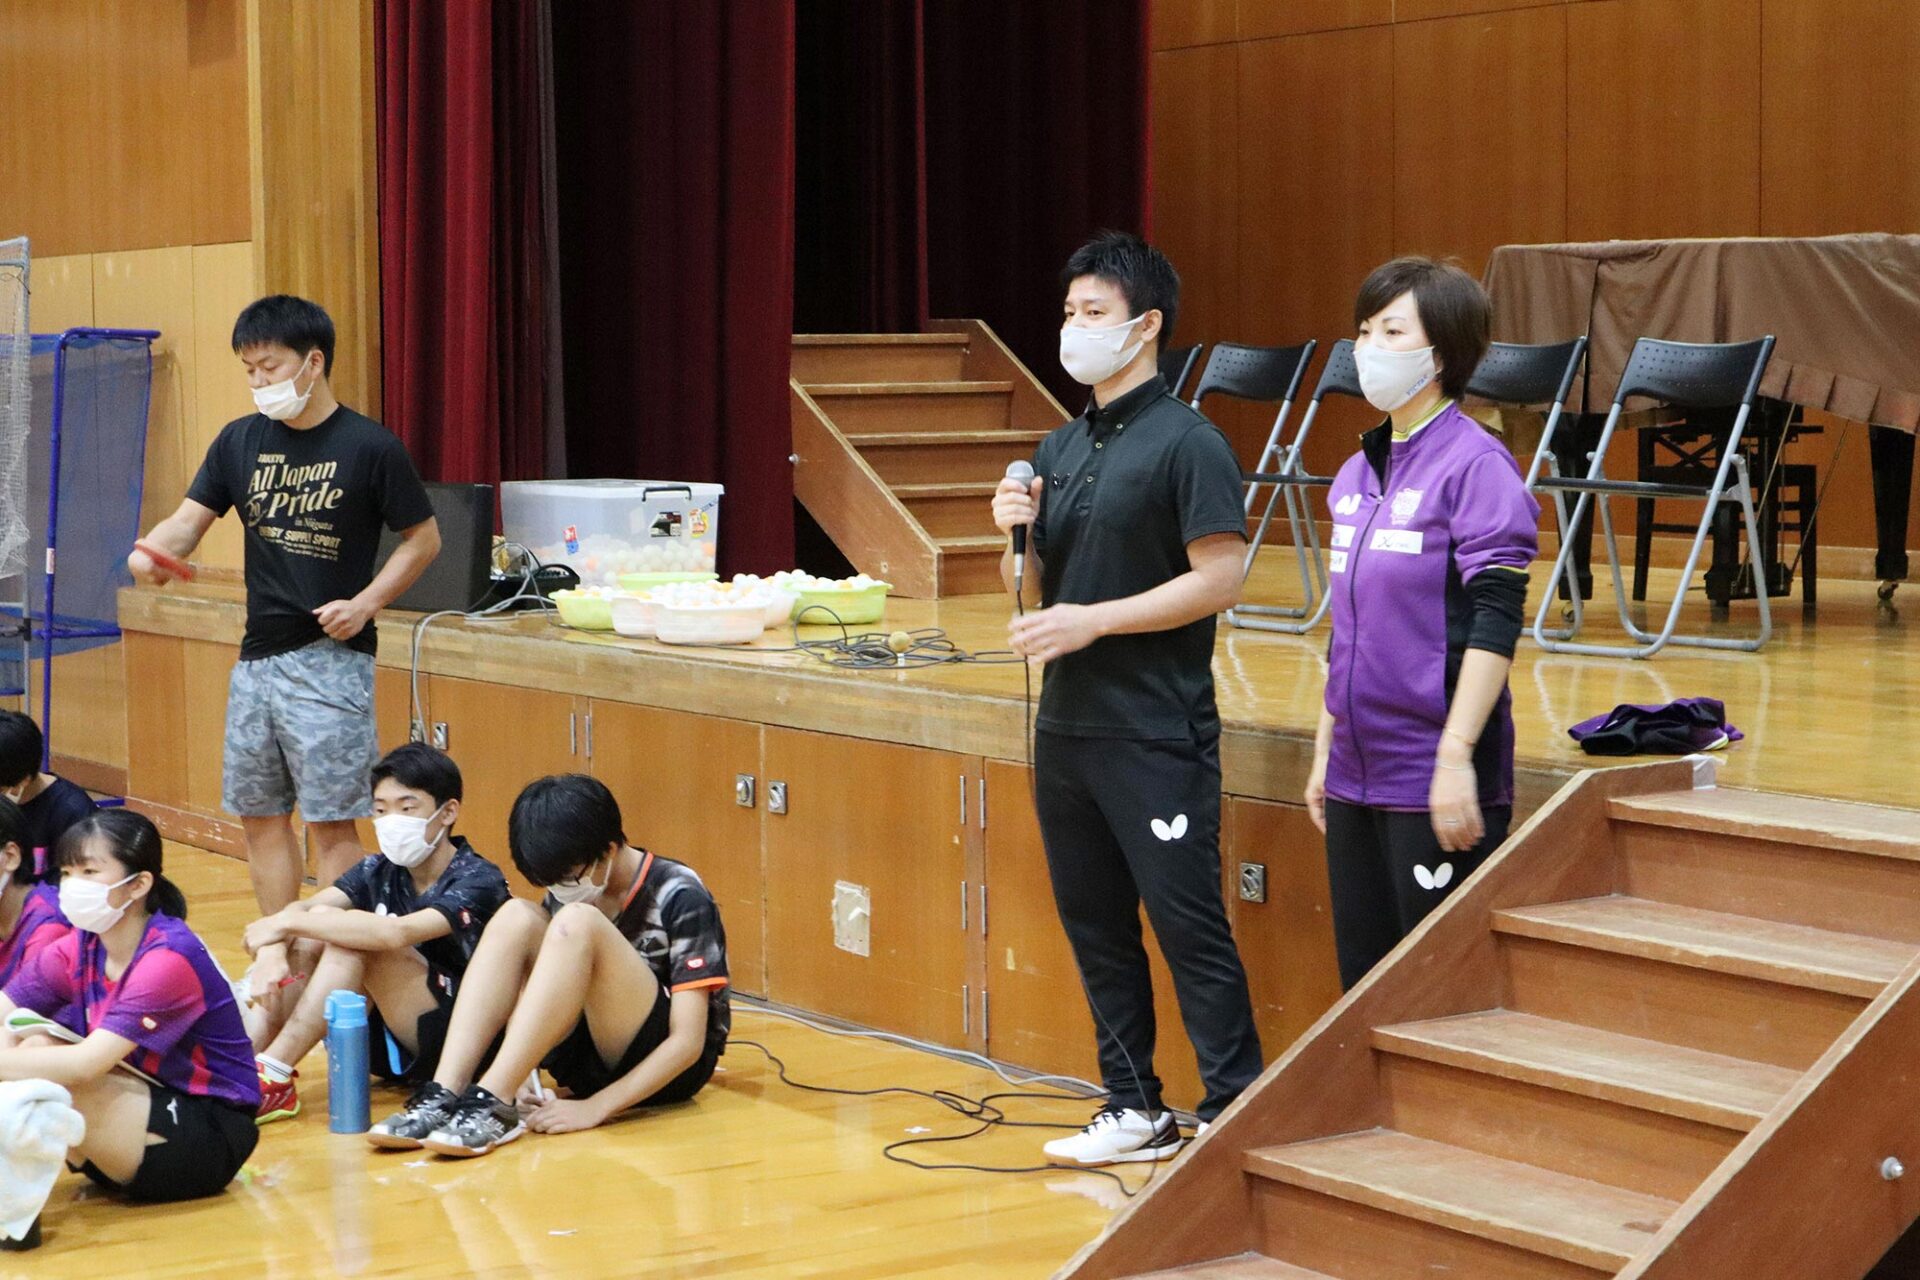 京都市卓球キャプテン指導者講習会に参加してきました